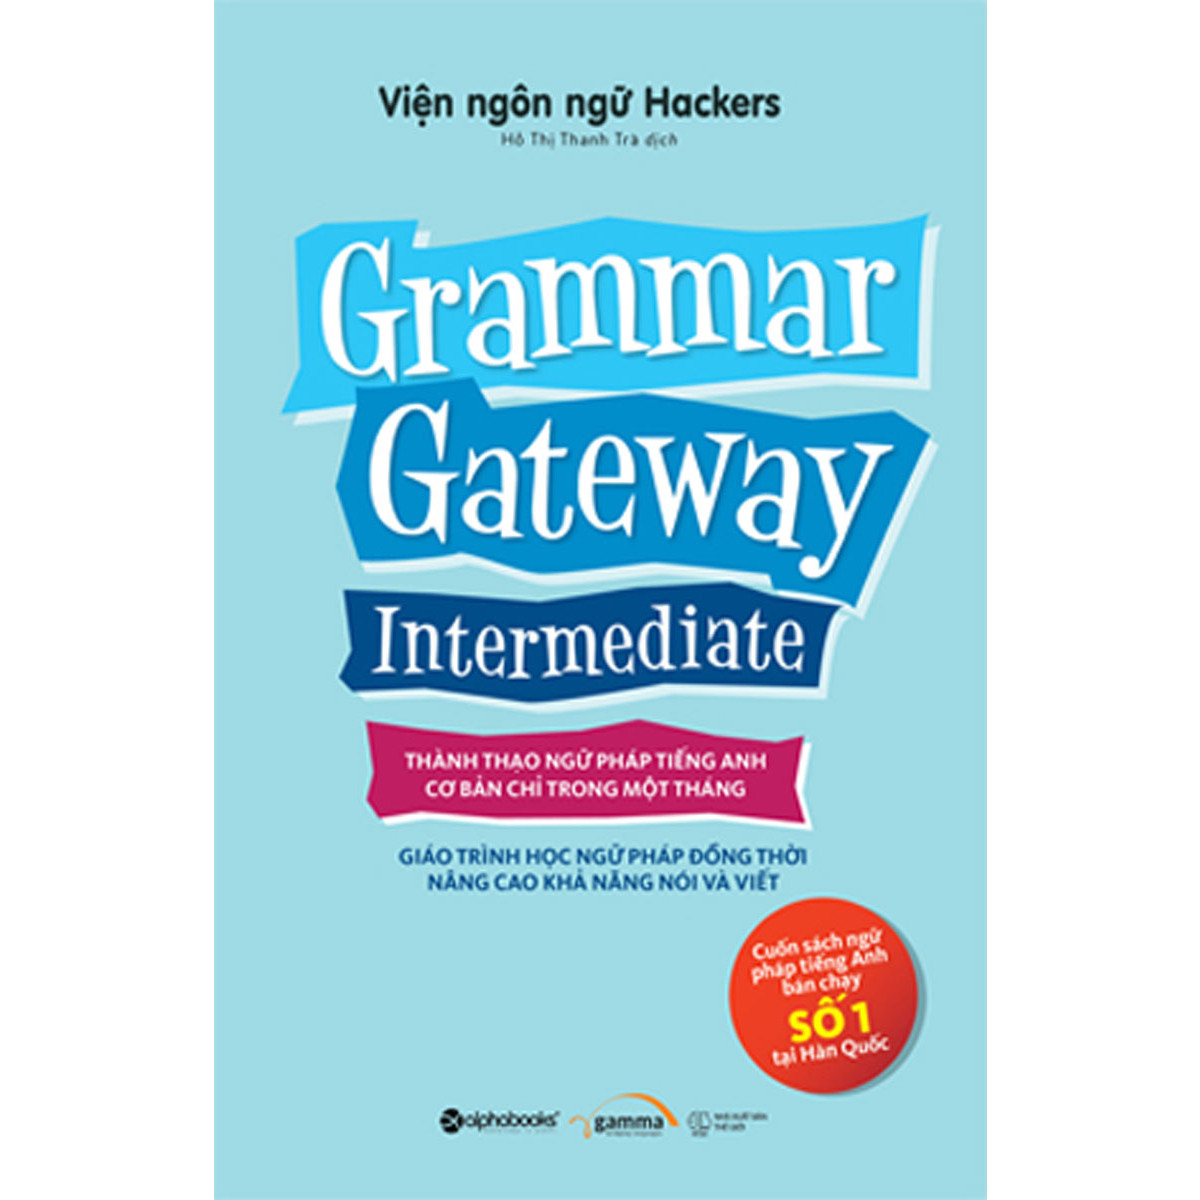 Grammar Gateway Intermediate (Thành Thạo Ngữ Pháp Tiếng Anh Cơ Bản Chỉ Trong 1 Tháng) (Quà tặng TickBook đặc biệt)